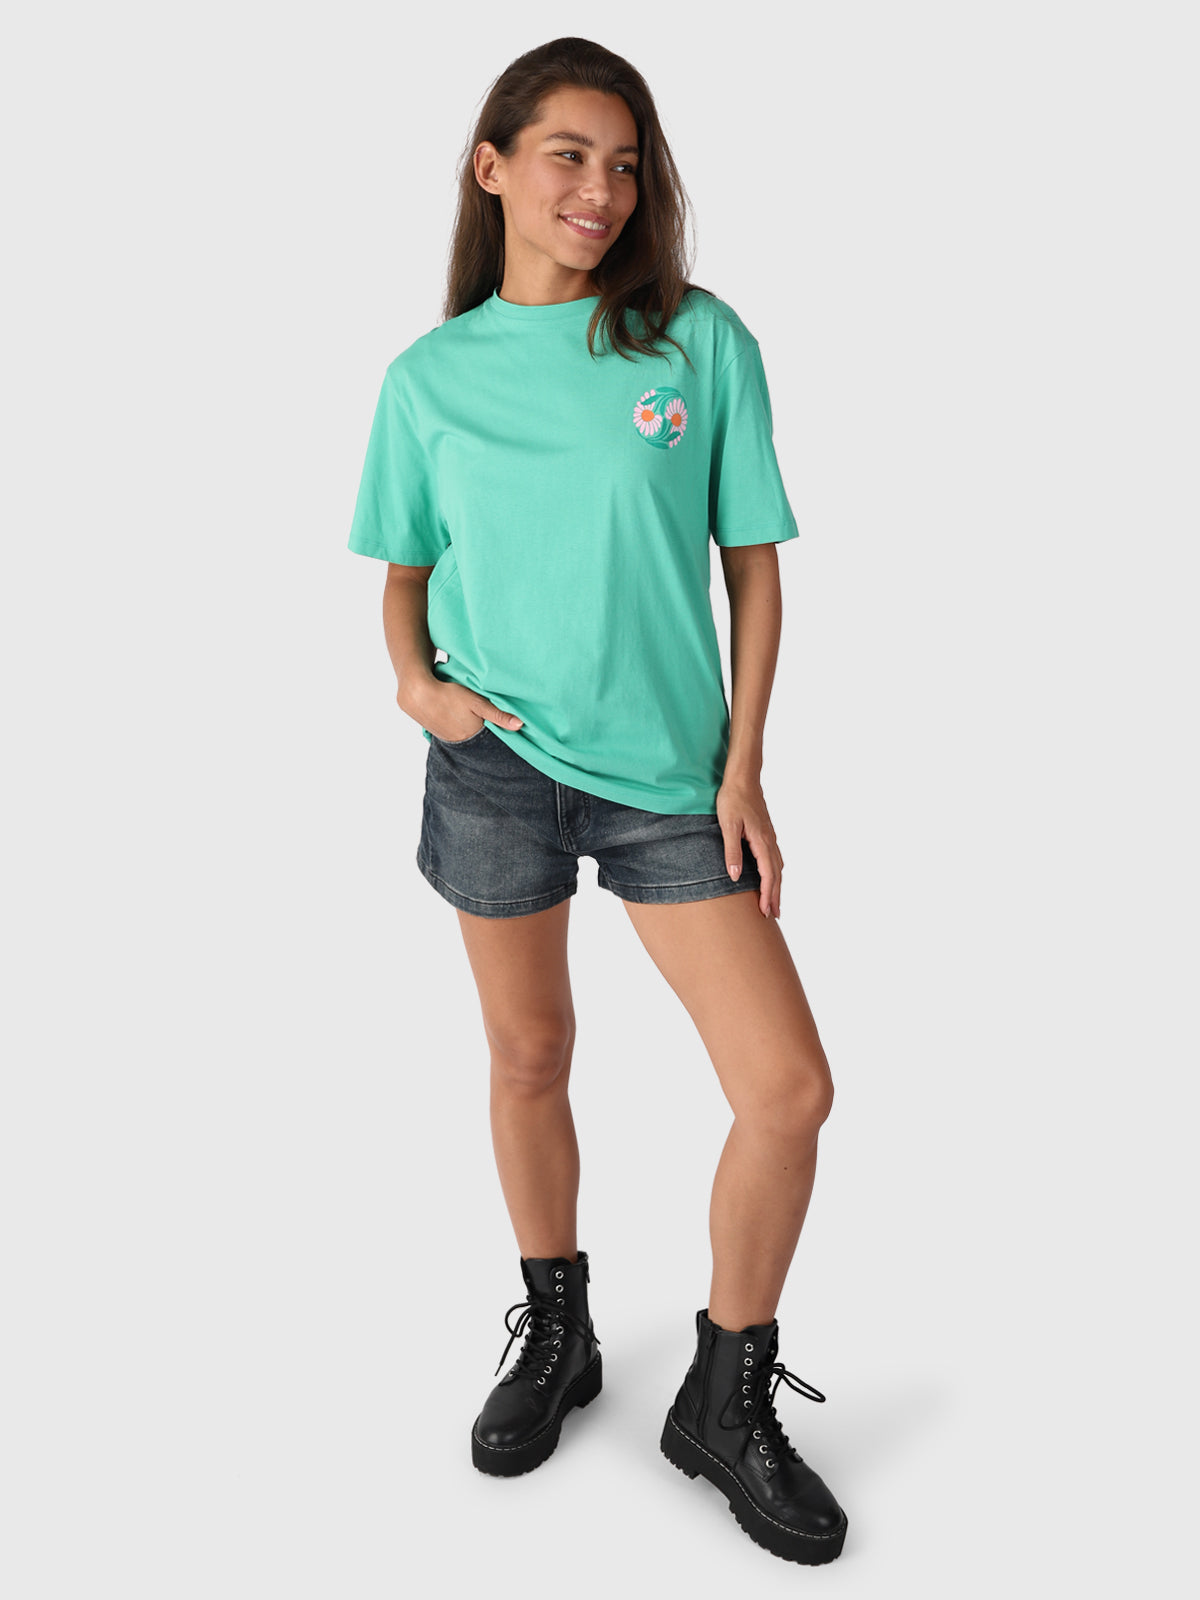 Imani-R Women T-Shirt | Green